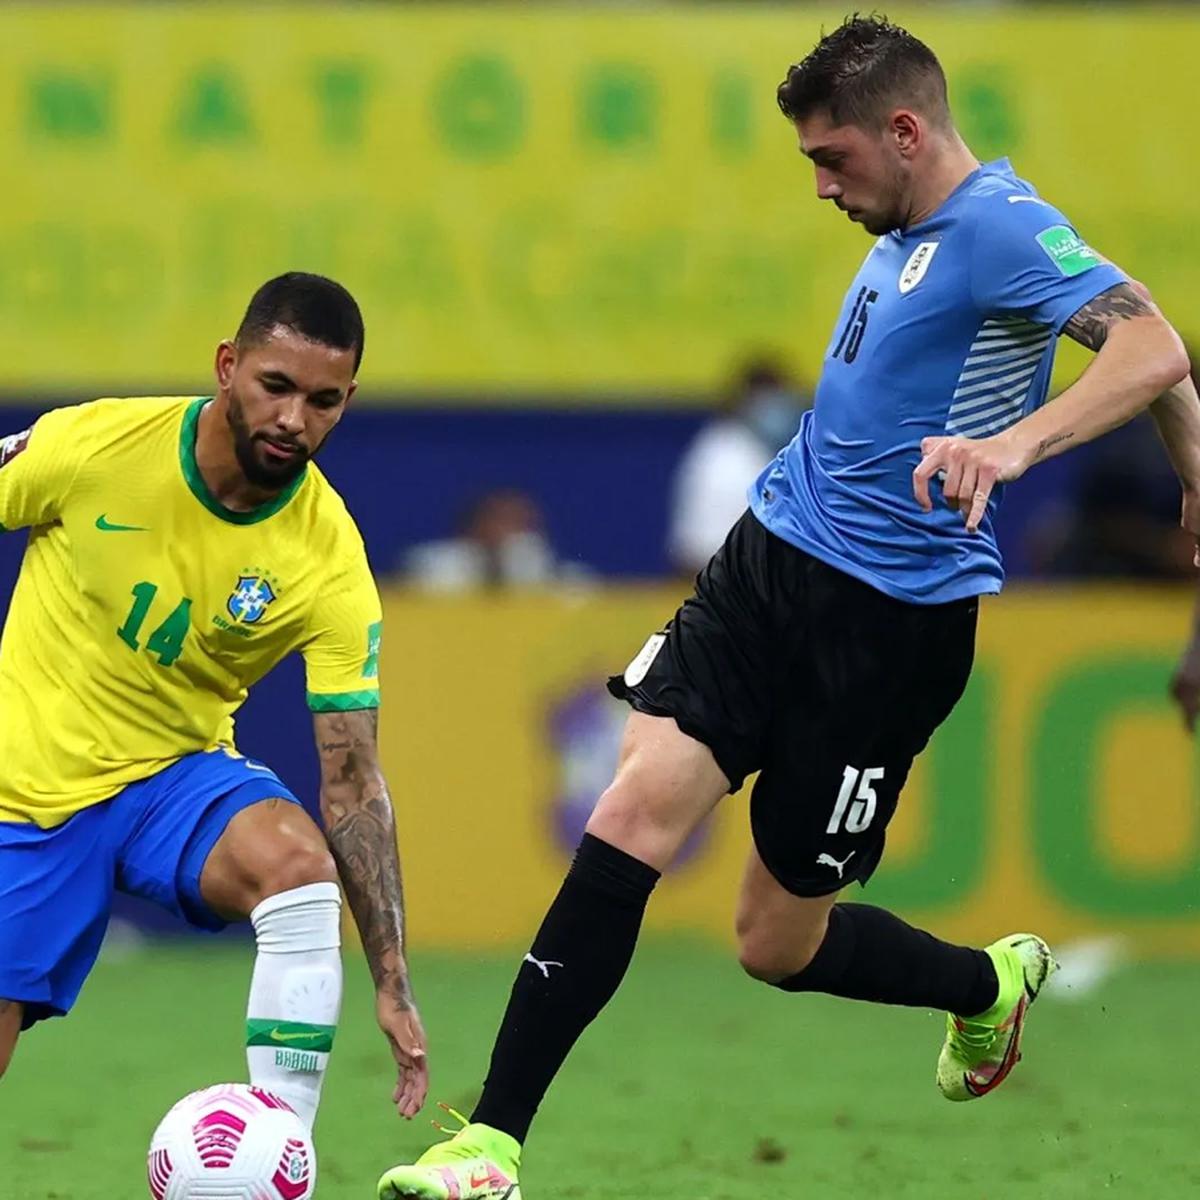 Eliminatorias Conmebol: Uruguay vs Brasil: a qué hora juega y